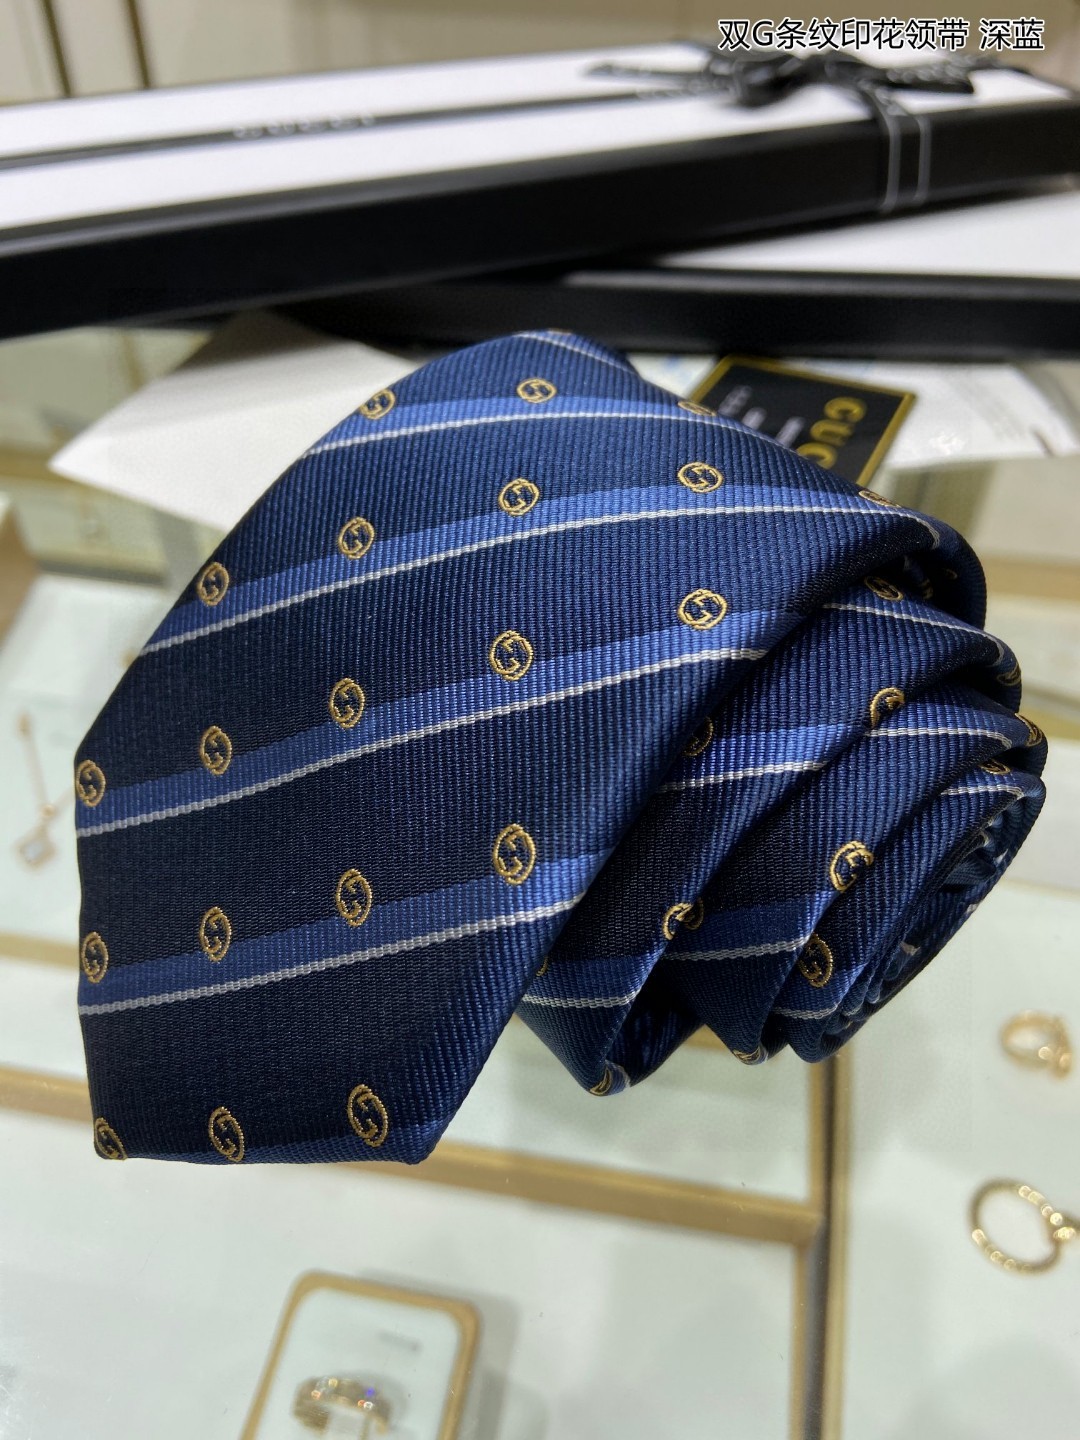 特价G家专柜新款双G条纹印花领带男士领带稀有采用经典小GLOGO提花展现精湛手工与时尚优雅的理想选择这款